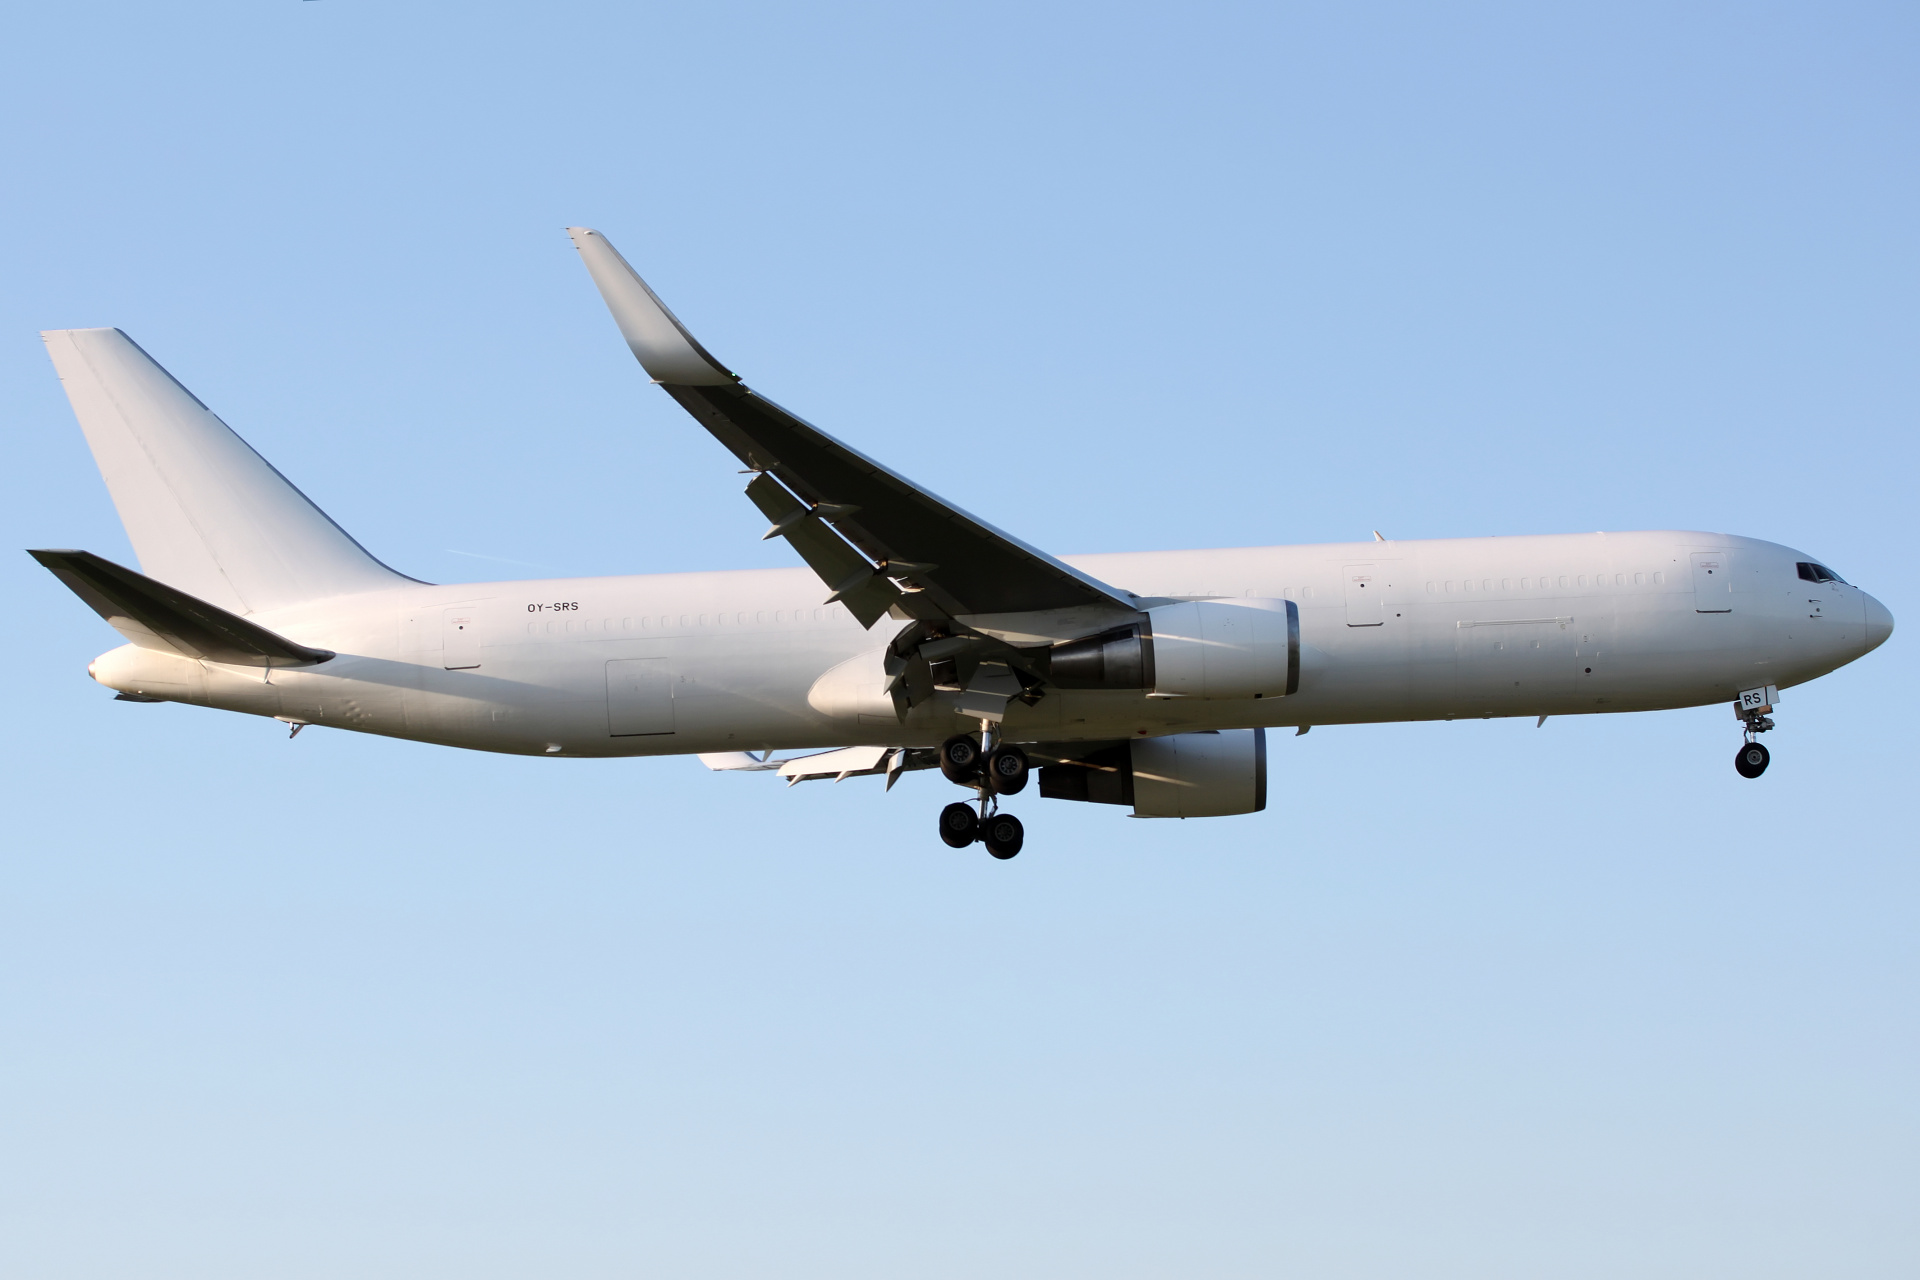 BCF, OY-SRS, Maersk Star Air (Samoloty » Spotting na EPWA » Boeing 767-300F)